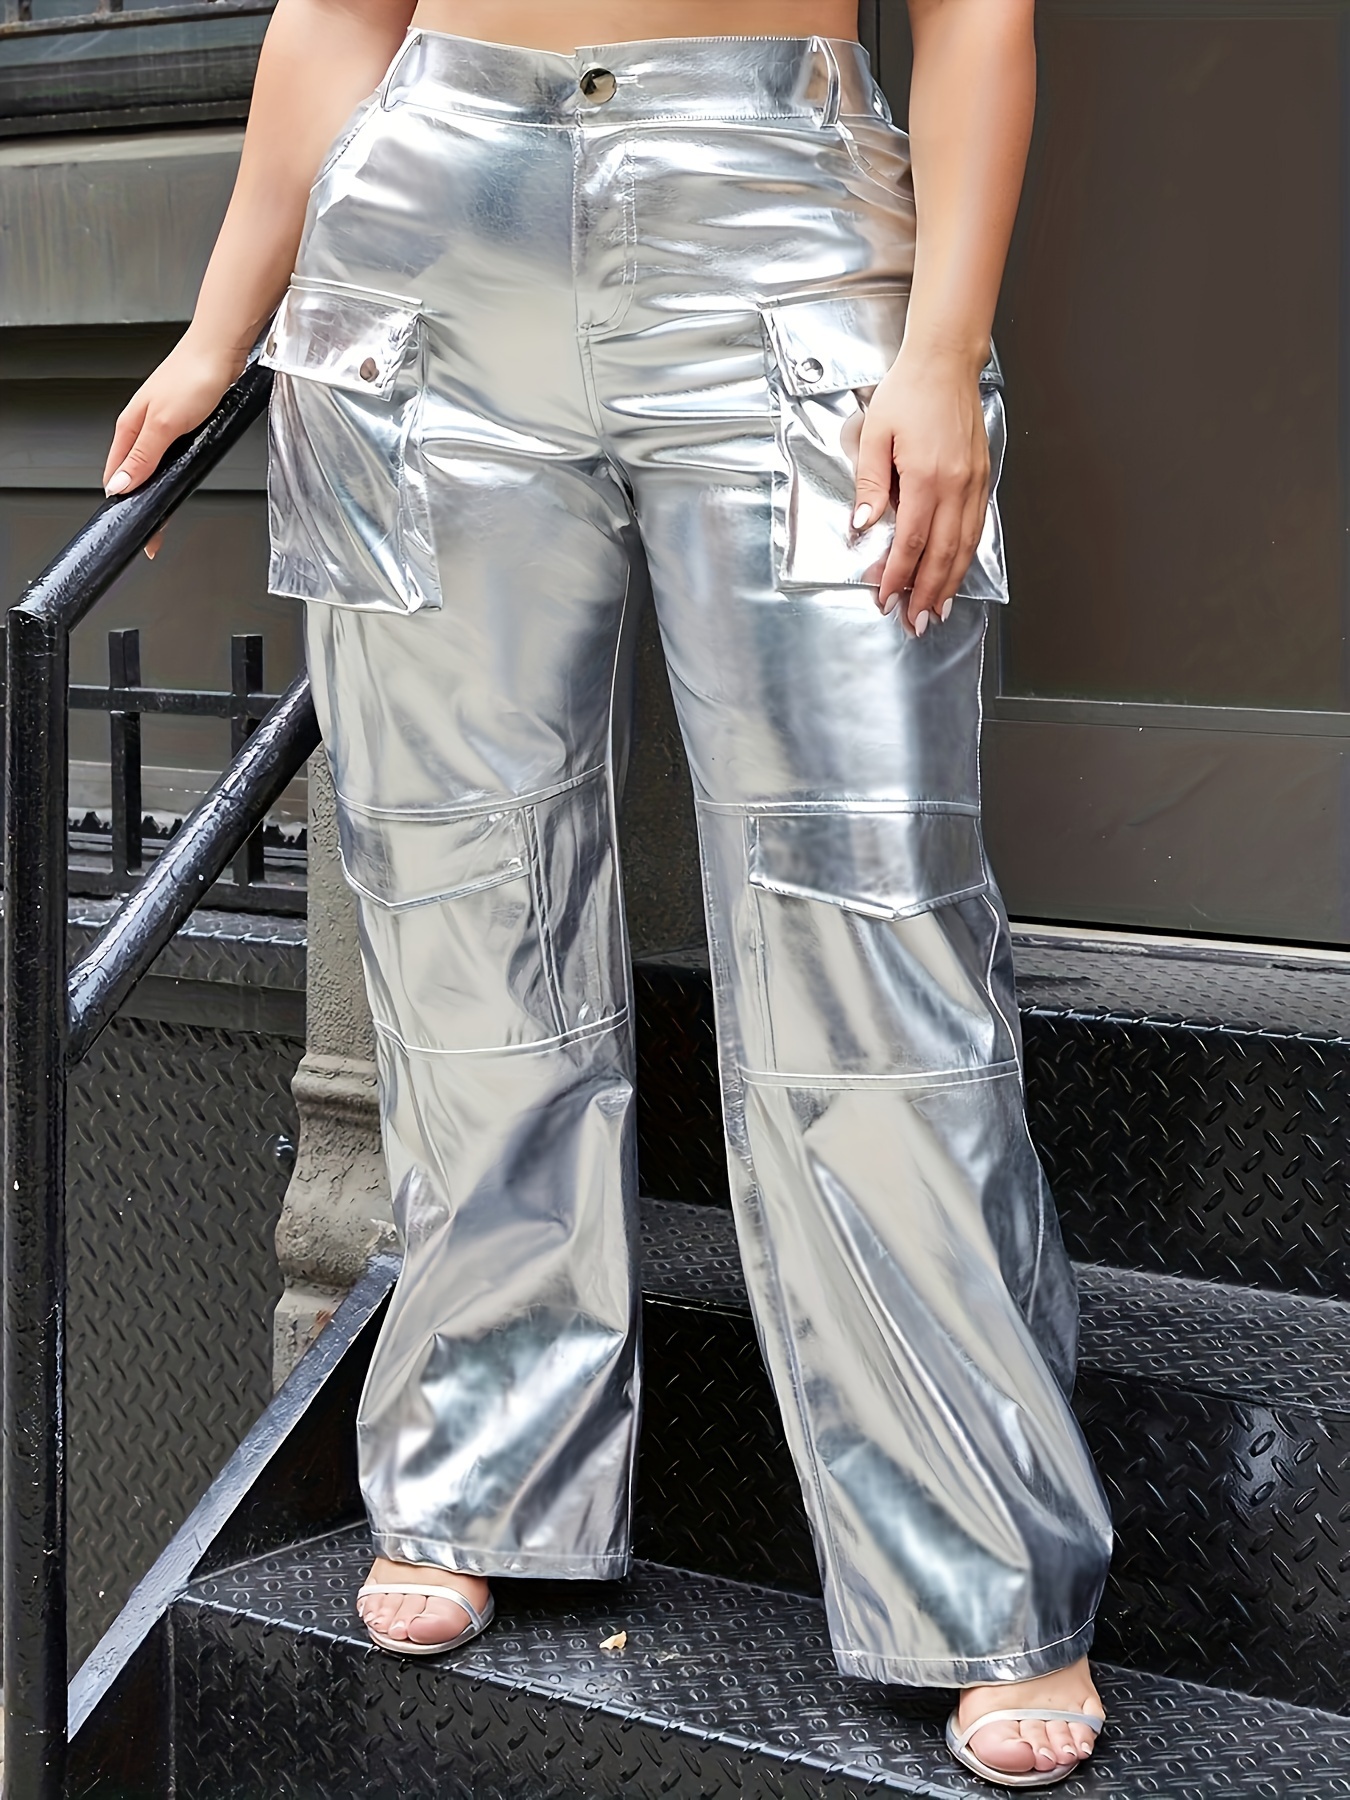 Silver Metallic Leggings Outfit - Temu